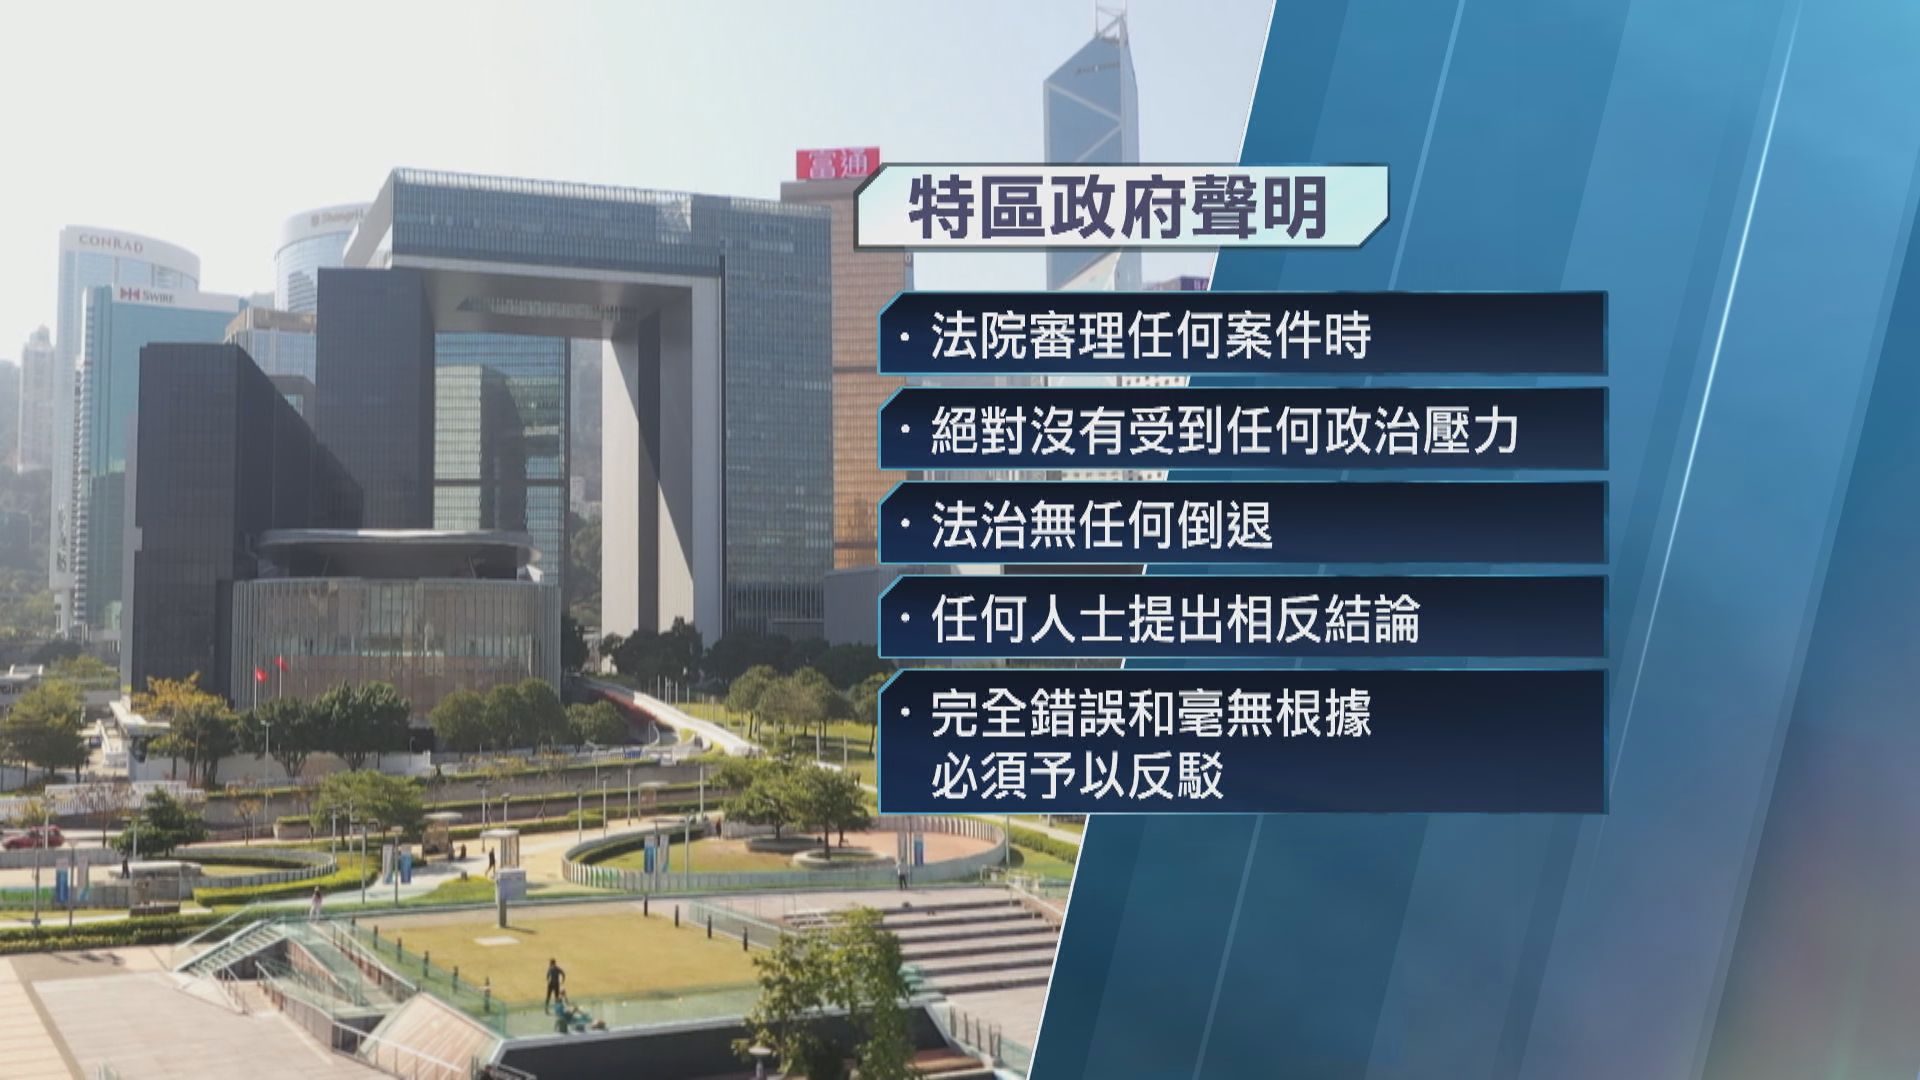 岑耀信指香港慢慢變成極權 特區政府批評完全錯誤和毫無根據